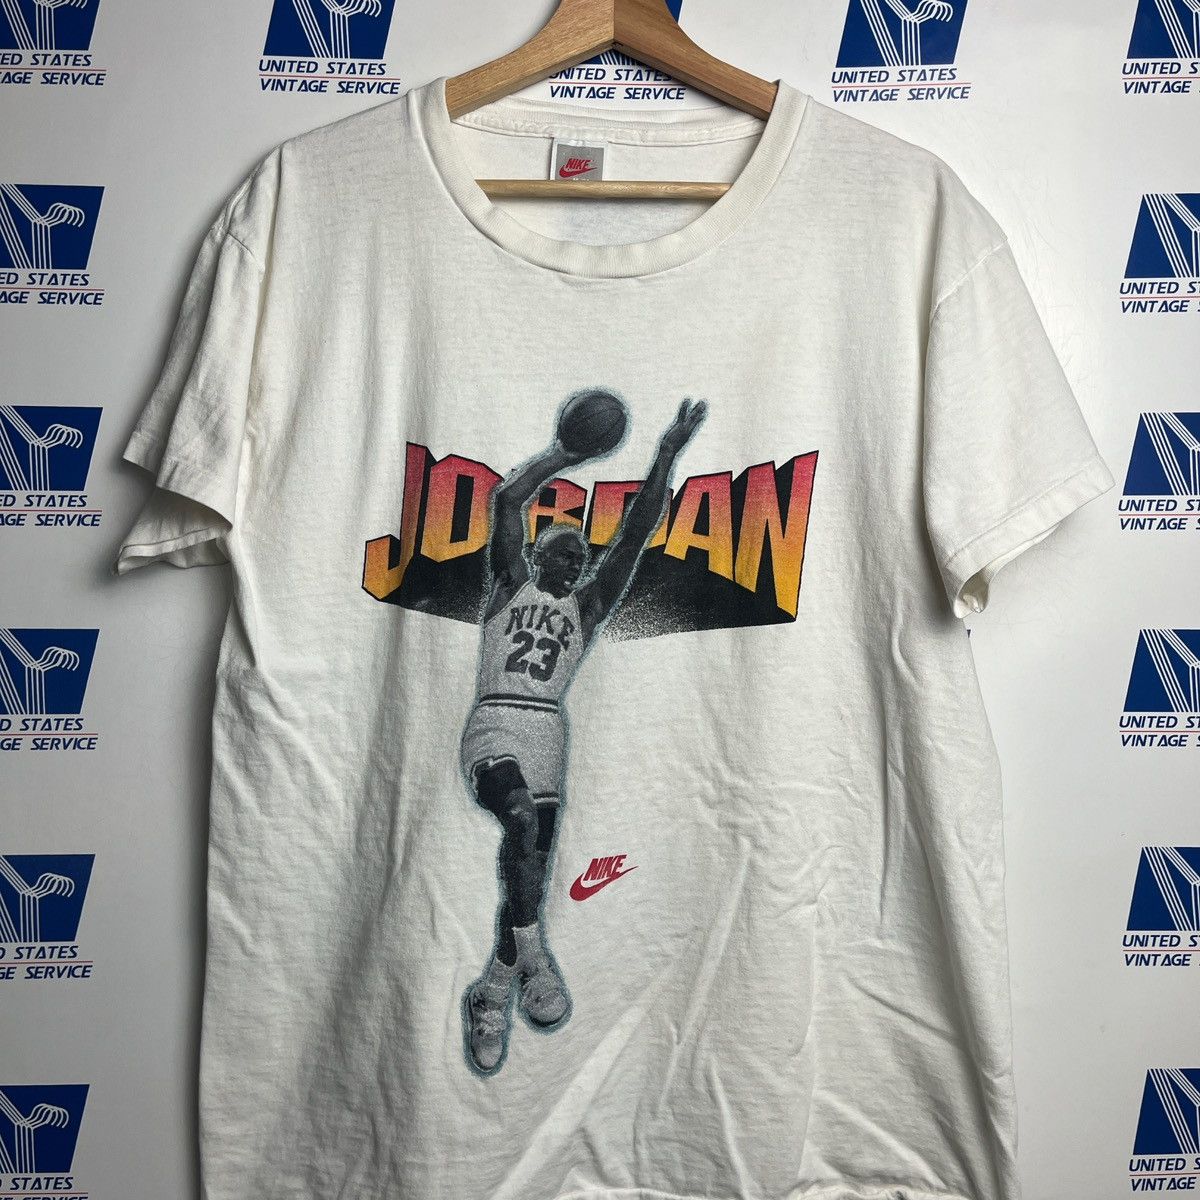 Nike Vintage 90’s Nike Micheal Jordan Graphic T-shirt Size US L / EU 52-54 / 3 - 2 Preview